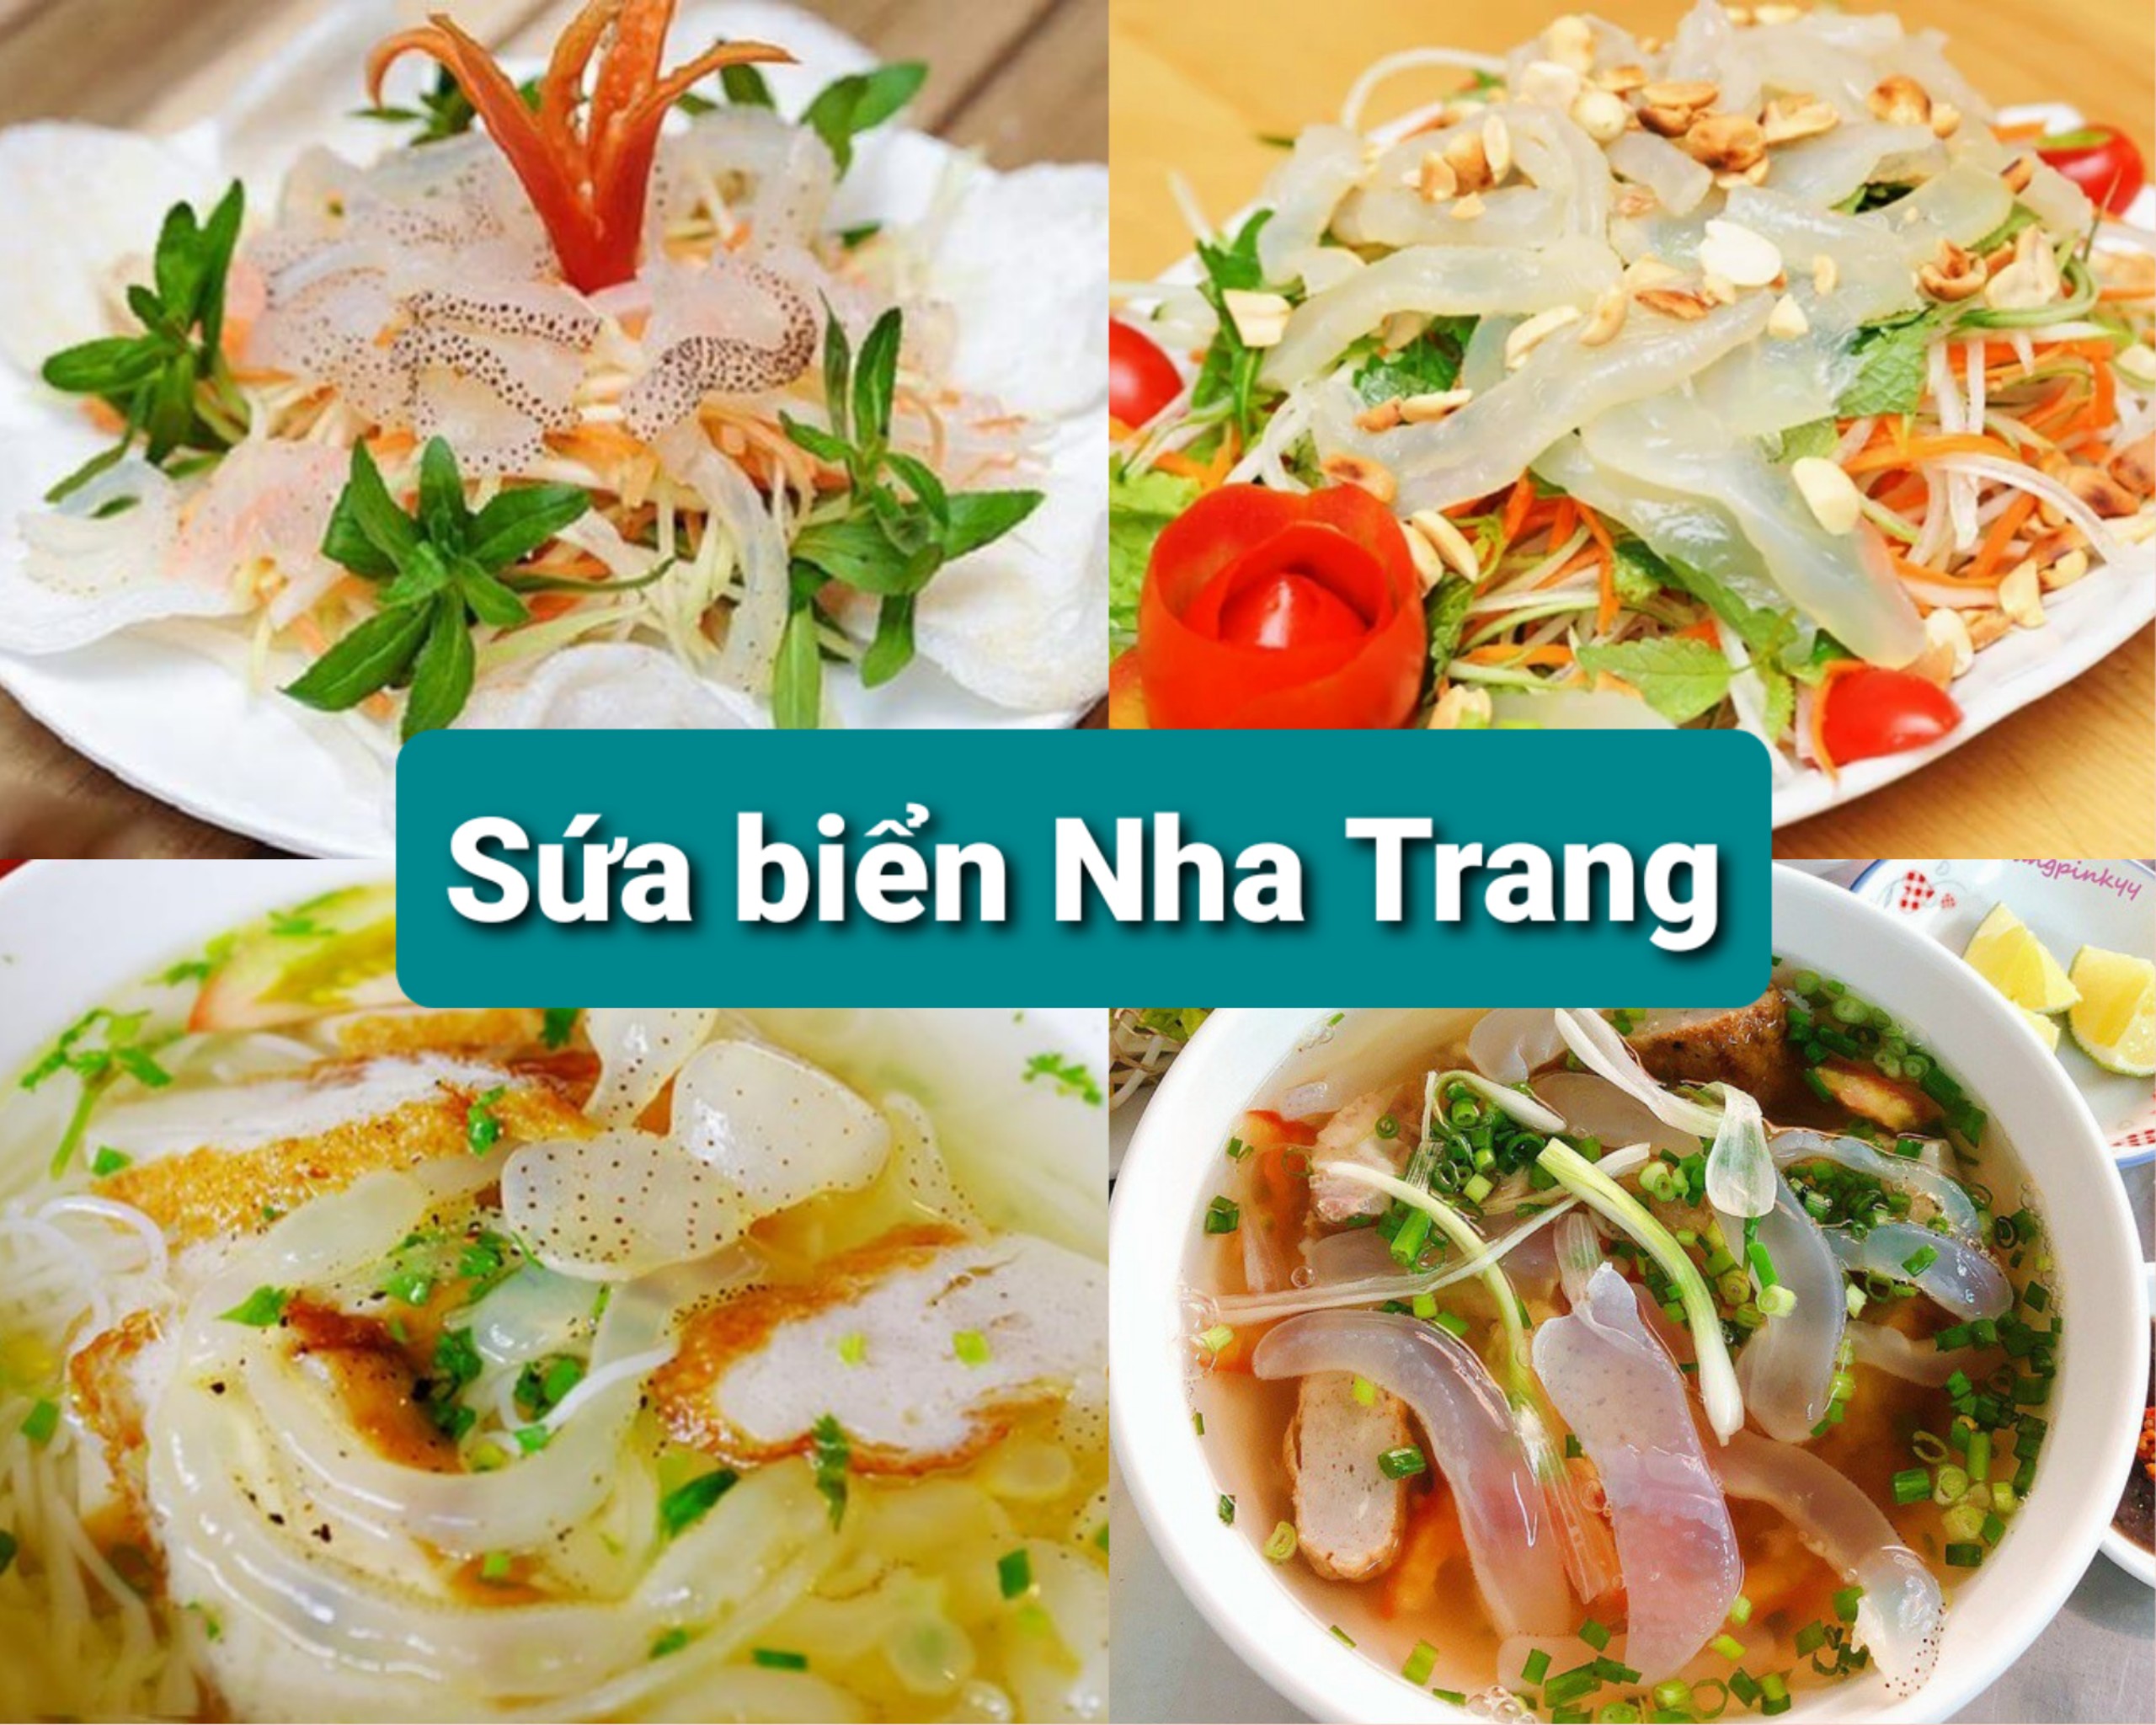 Sứa biển Nha Trang - nón sứa 1kg - Dùng làm gỏi, nấu bún sứa giòn ngon, thanh mát